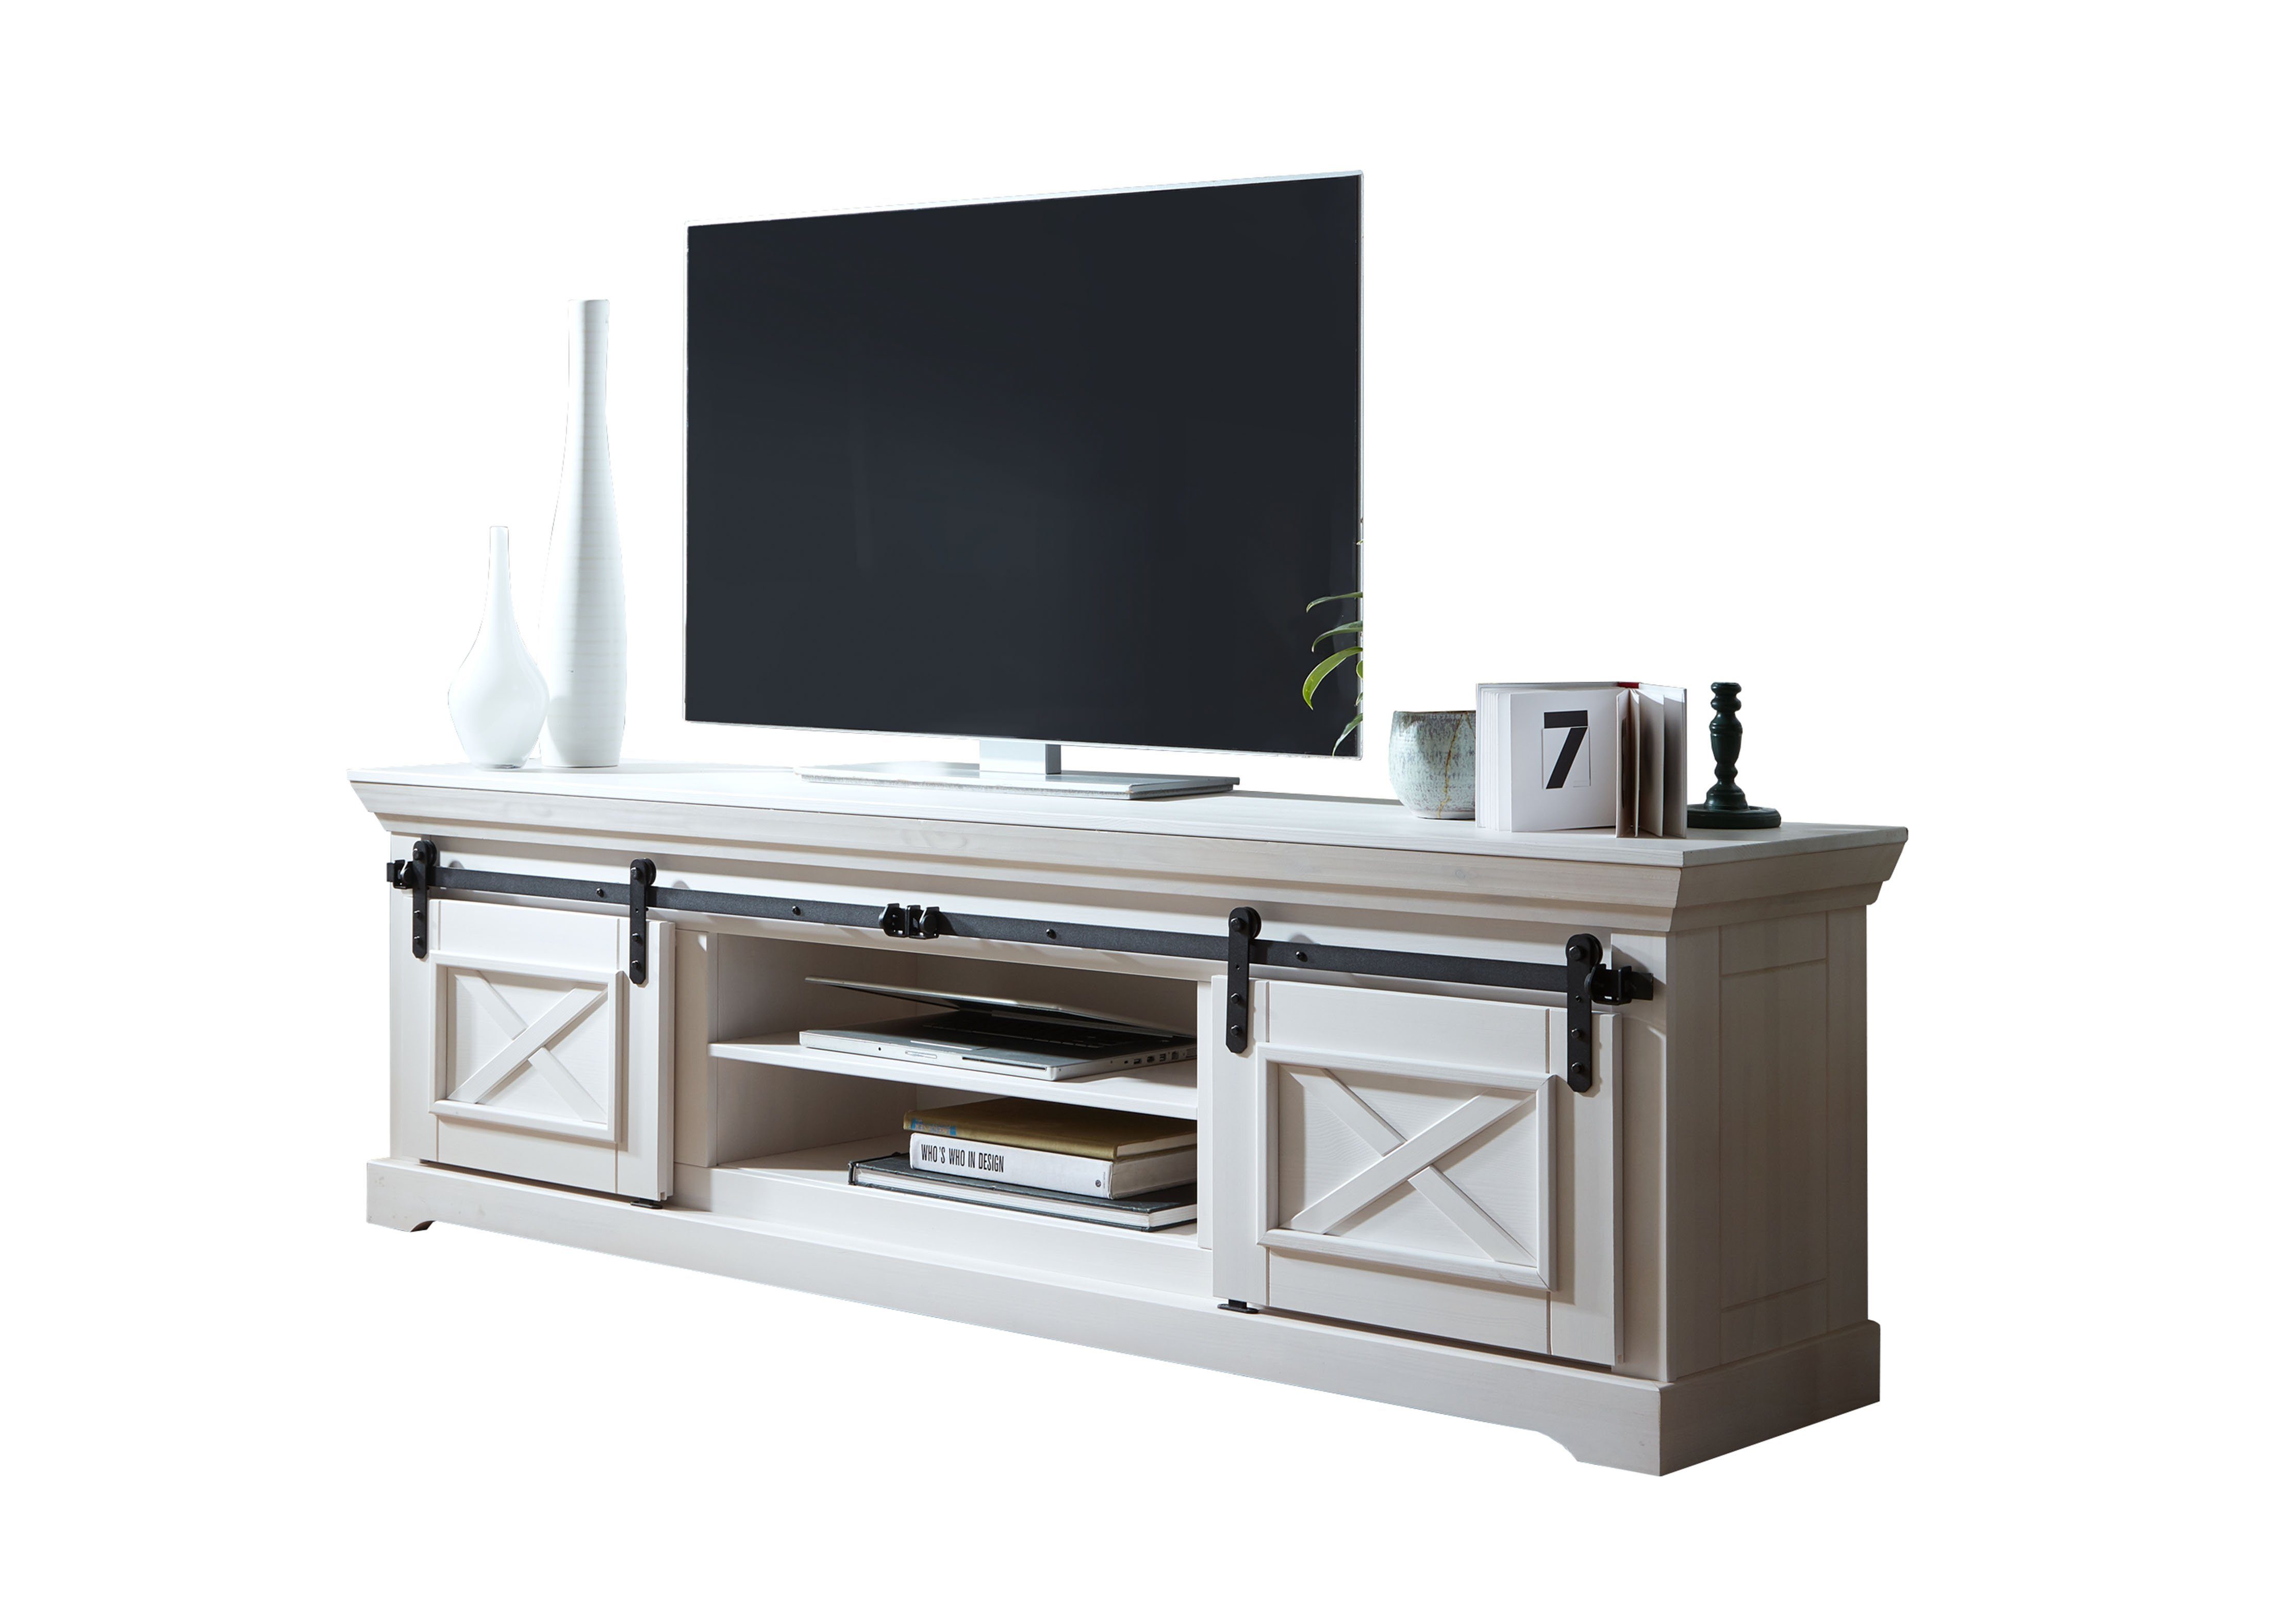 Woodroom TV-Schrank Maribo Kiefer massiv weiß, BxHxT cm 189x57x40